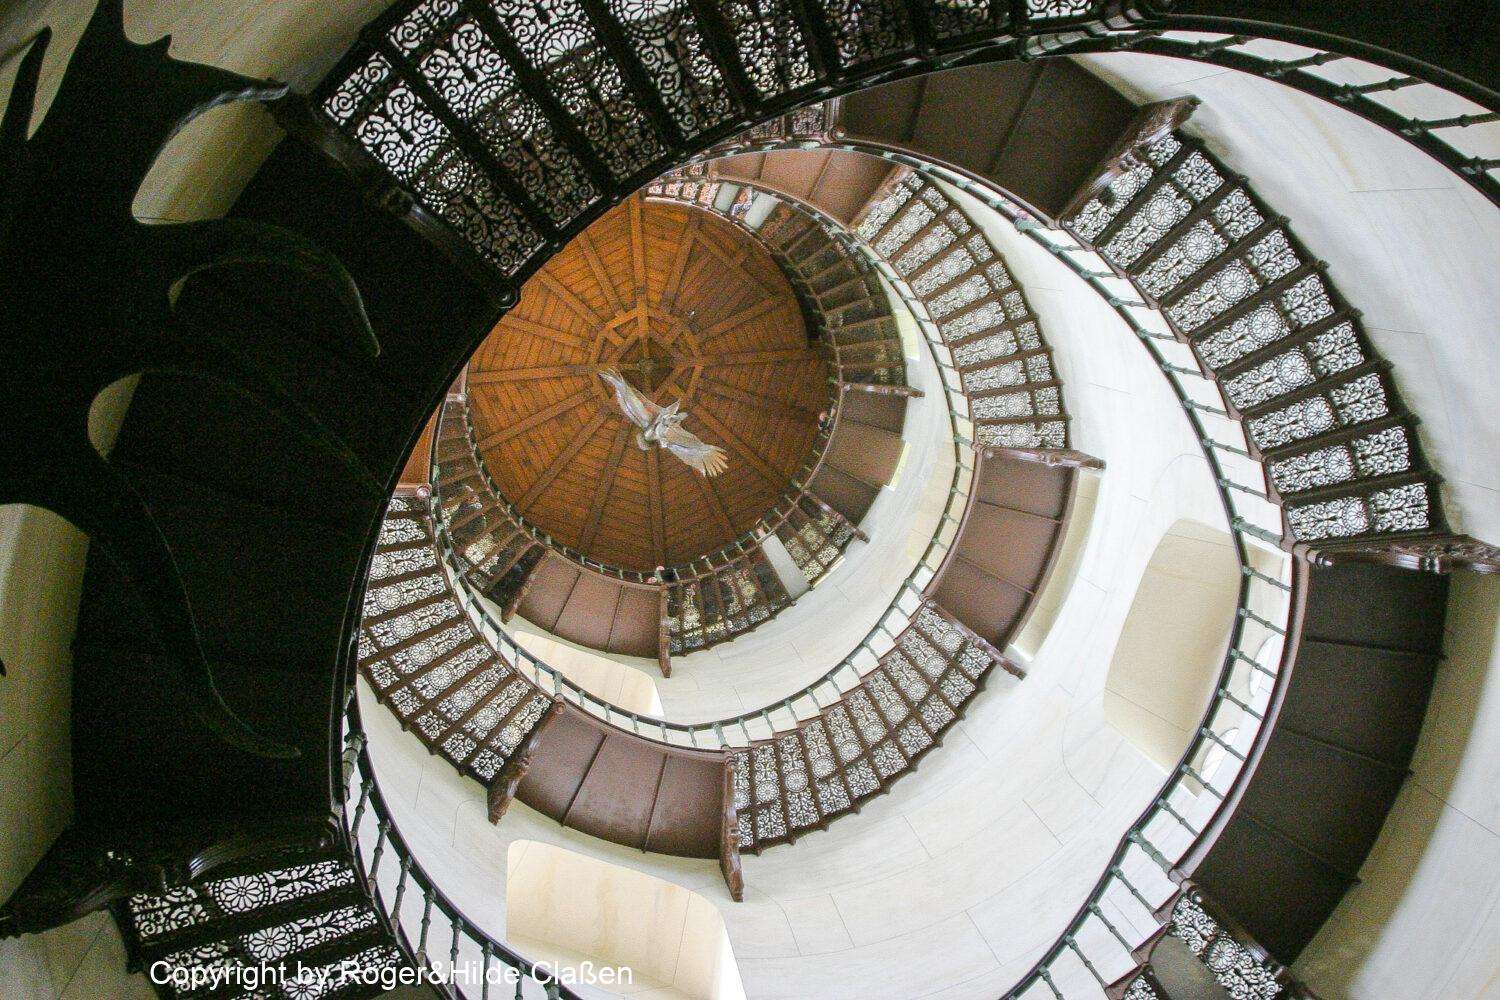 Das Jagdschloss Granitz auf der Insel Rügen. Diese Wendeltreppe im Innern des Turms führt auf die Aussichtsplattform. Man muss schon schwindelfrei sein